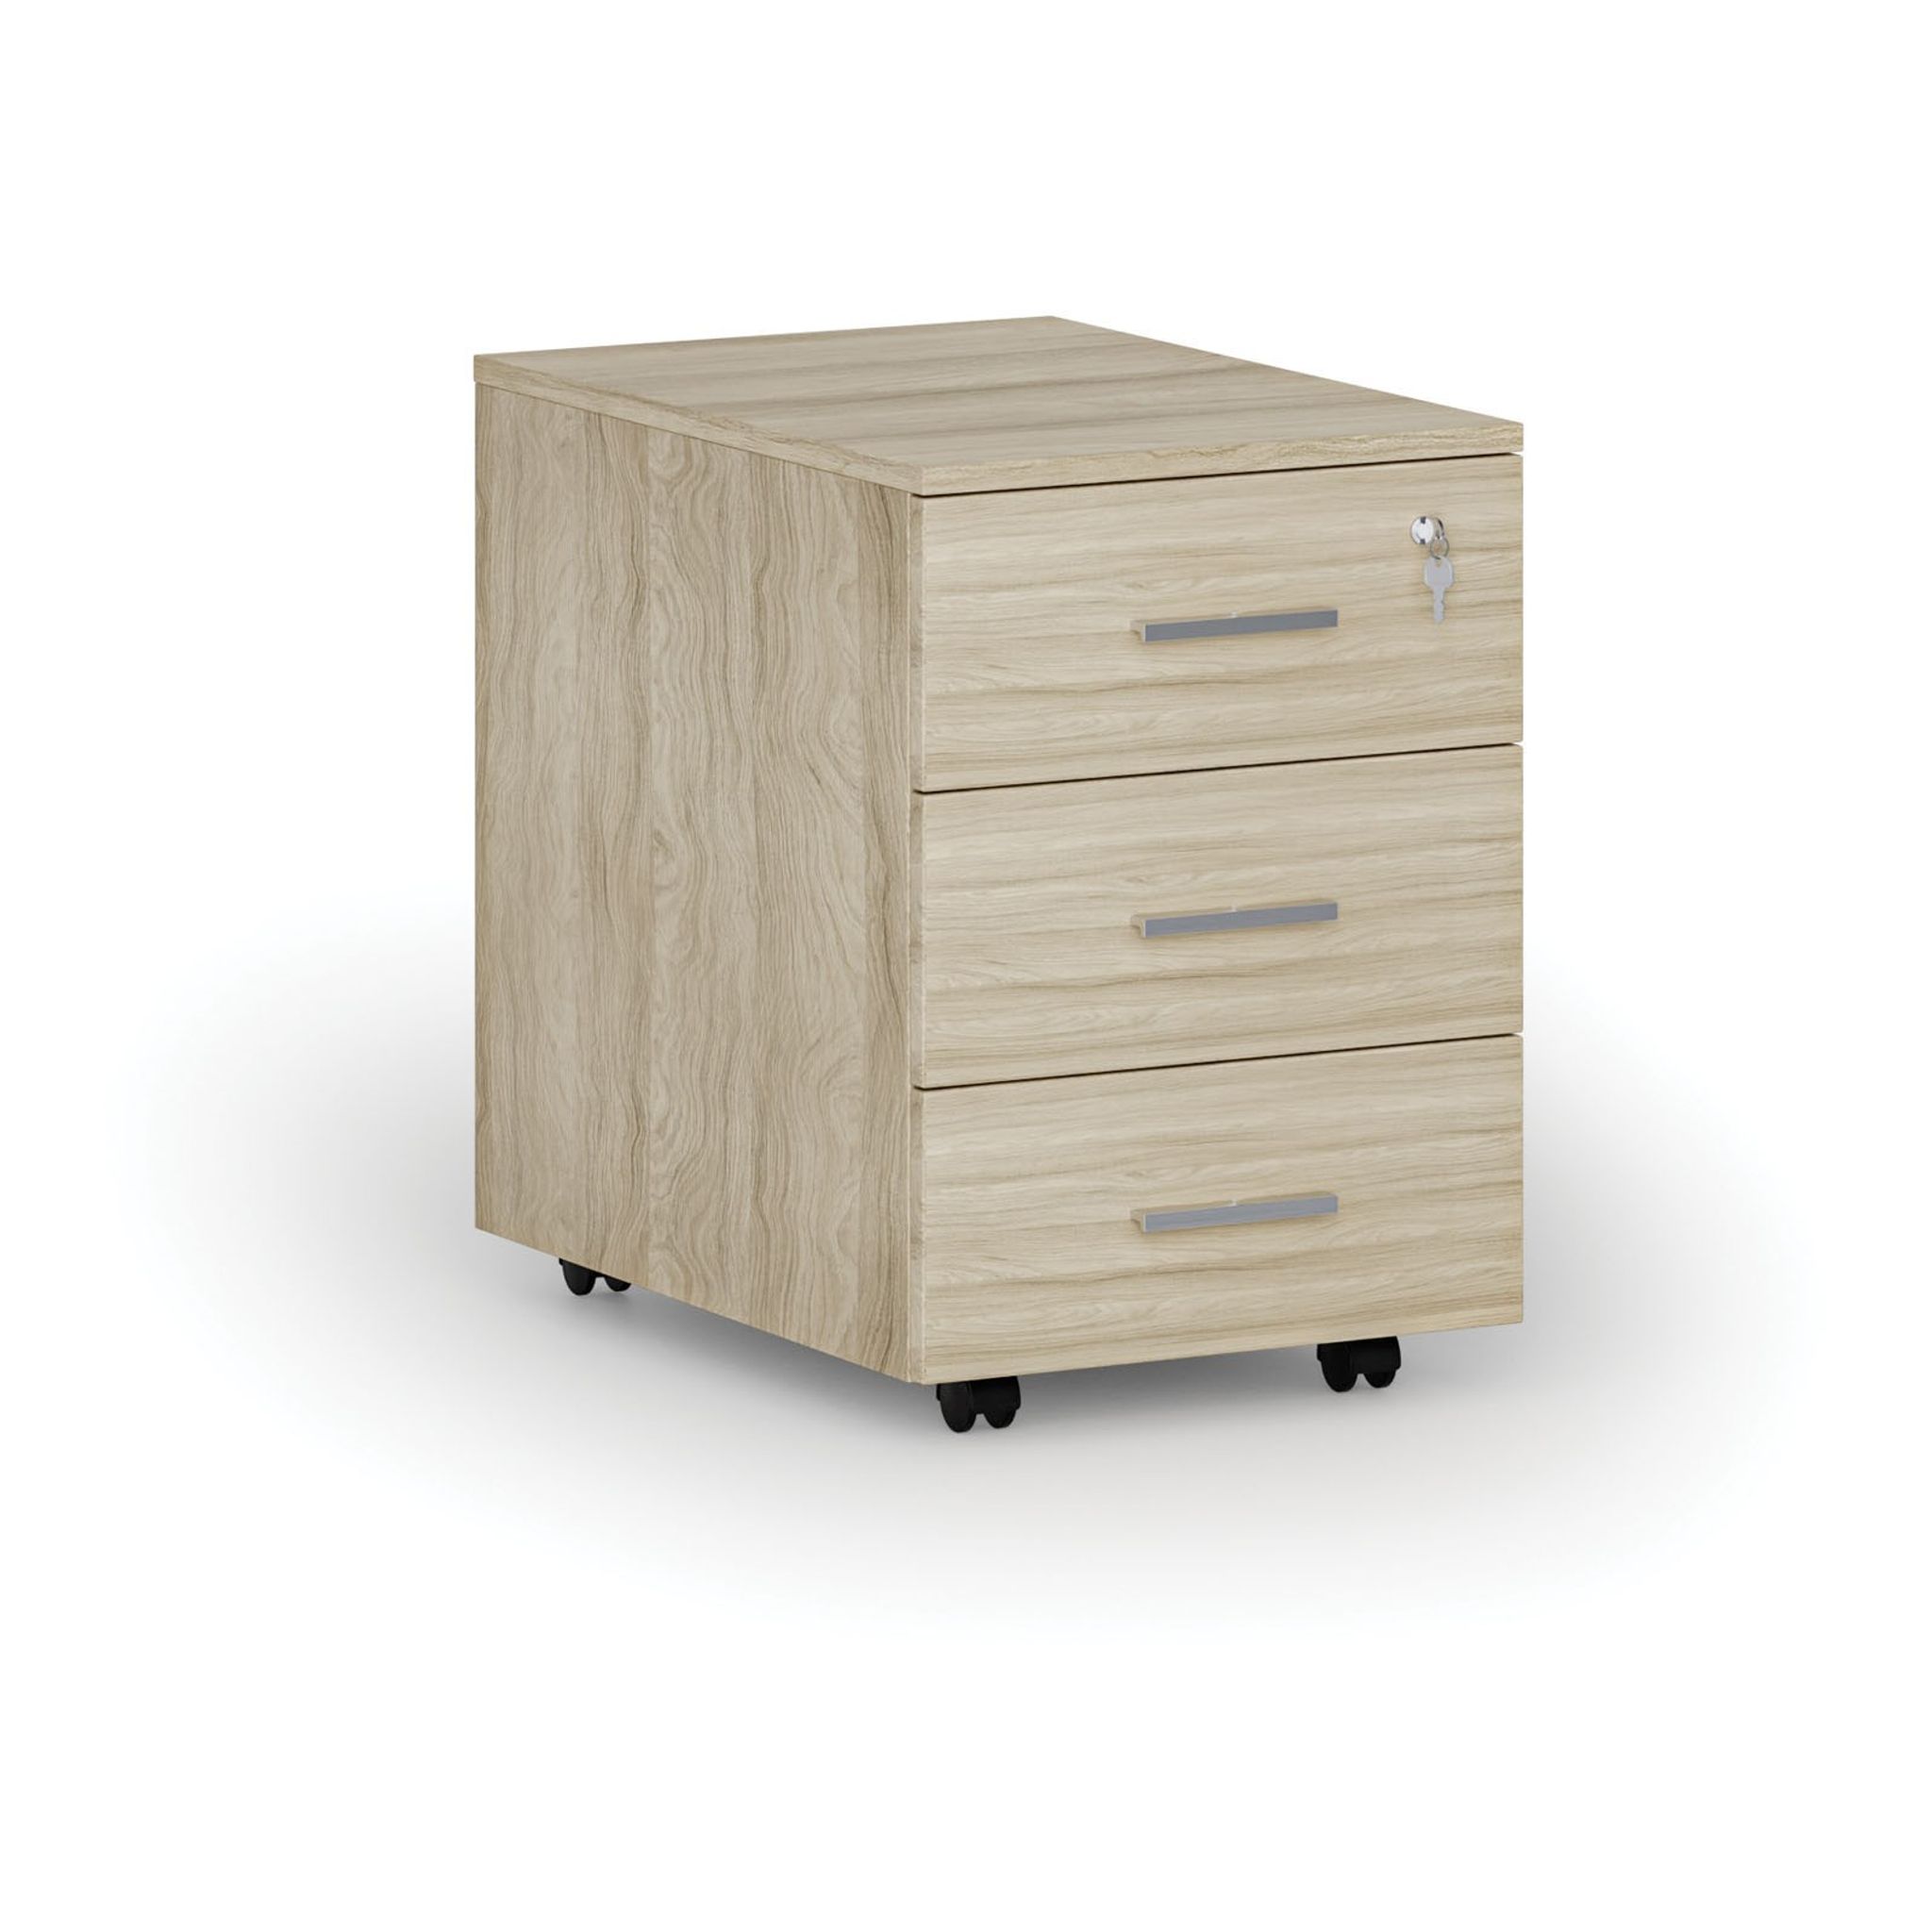 Büro-Rollcontainer SOLID, 3 Schubladen, 430 x 546 x 619 mm, Eiche natur